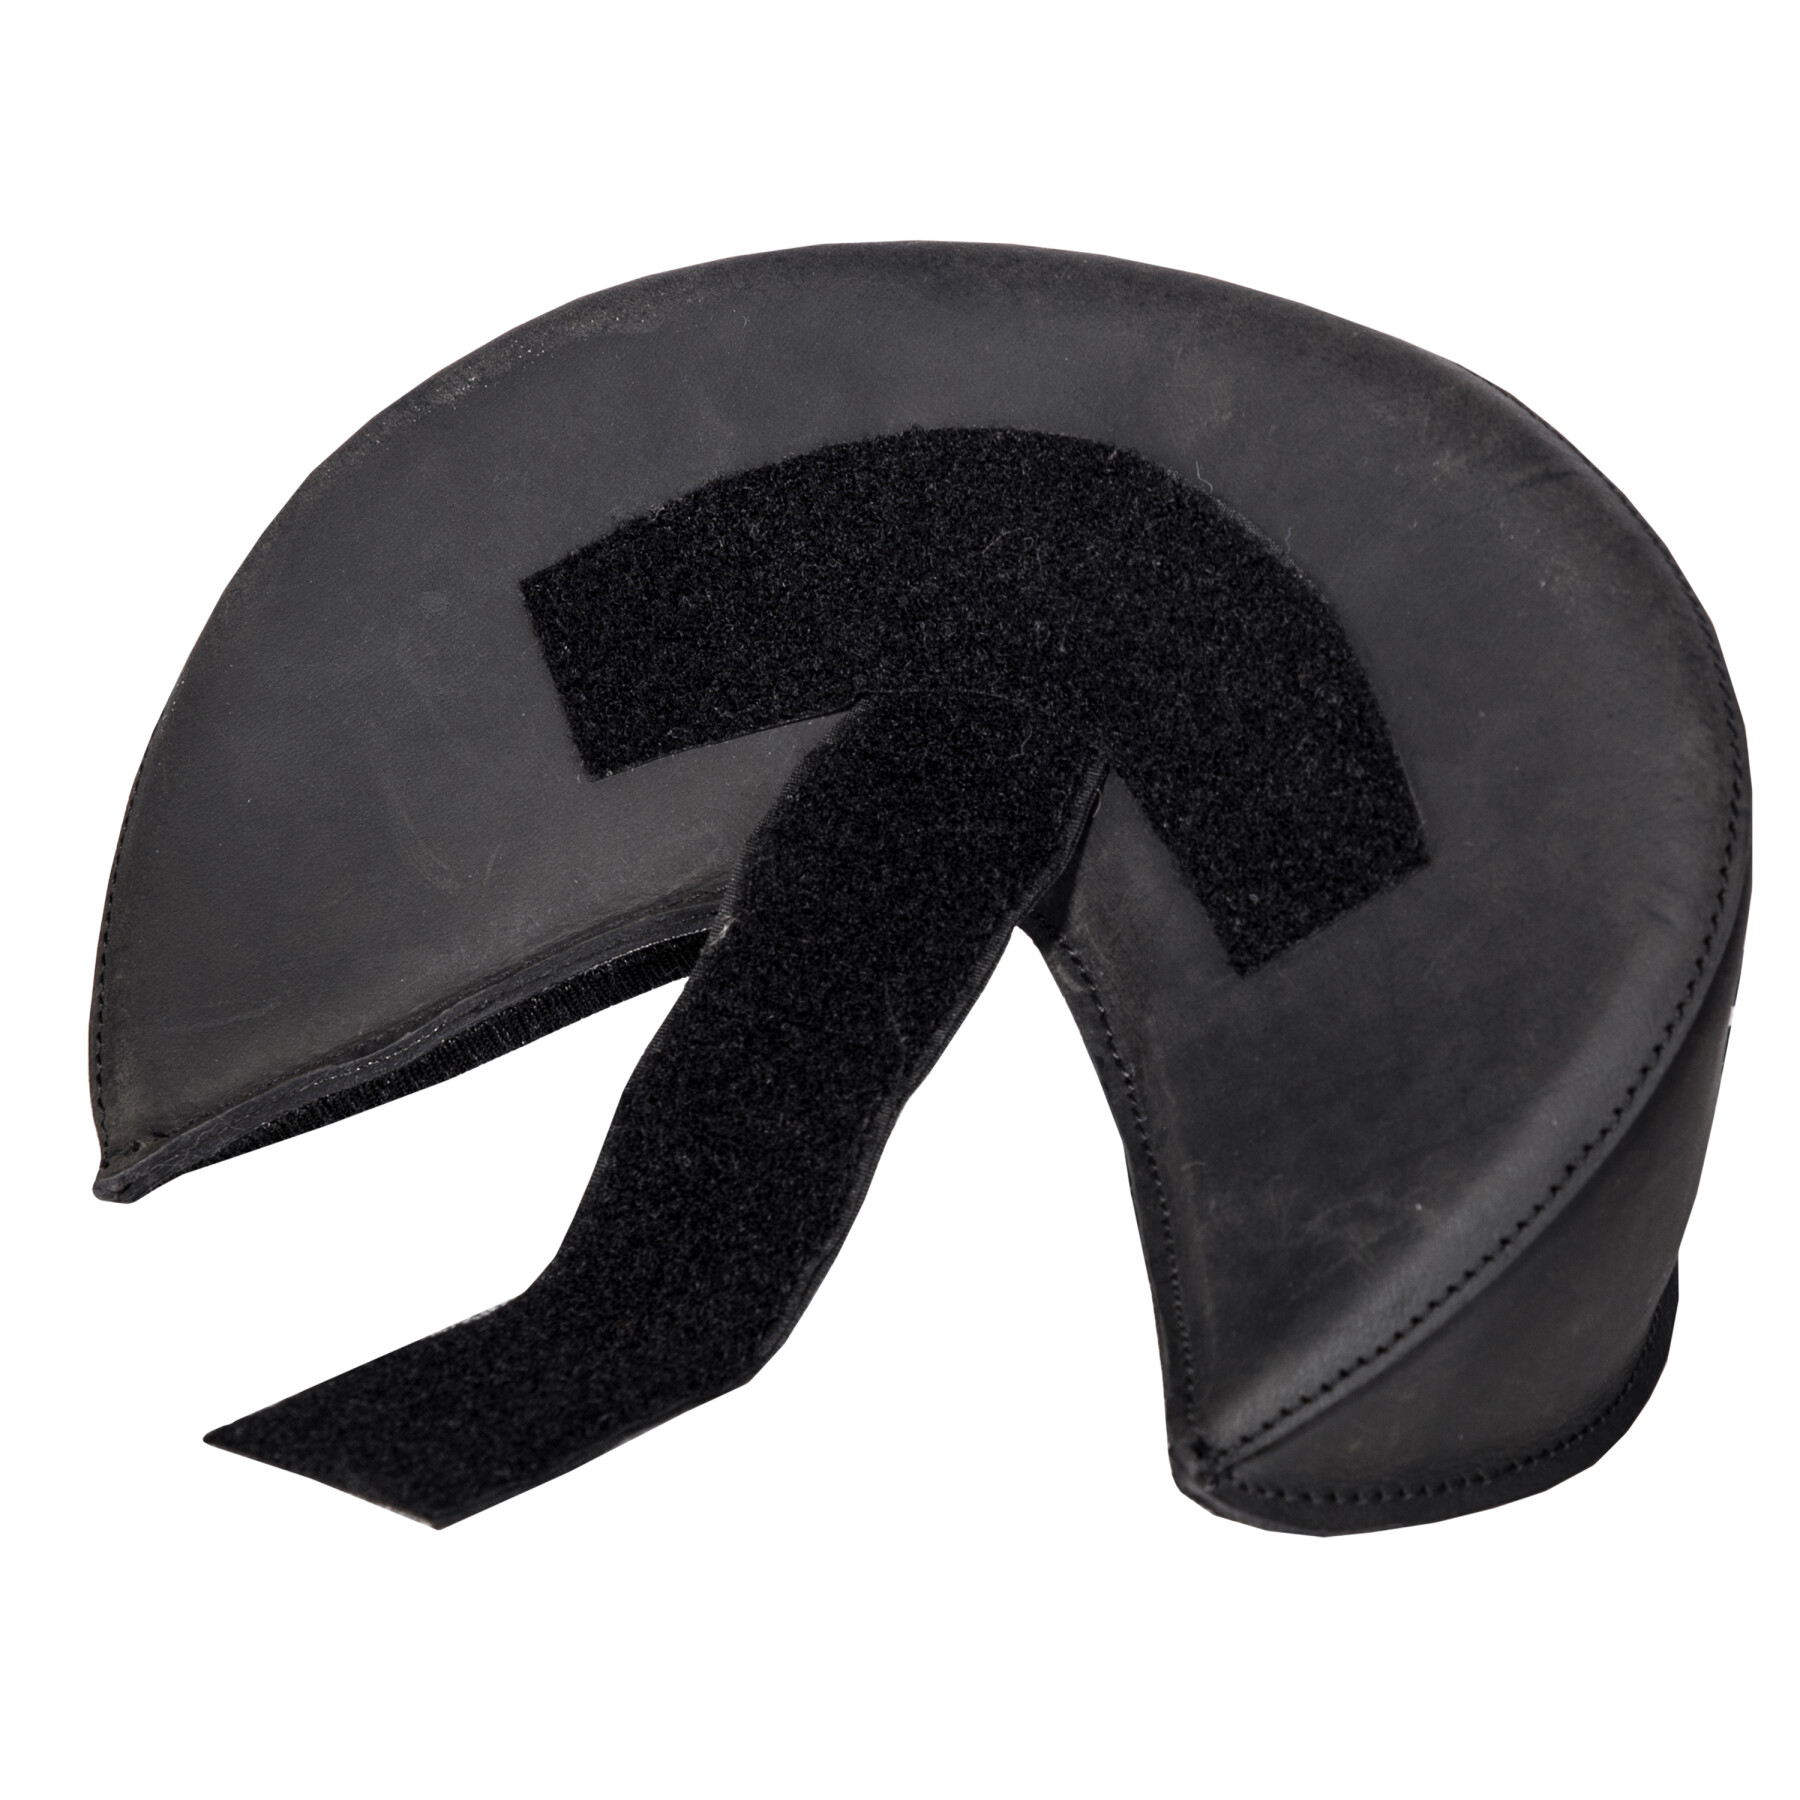 Leather velcro back support Edix Saddles Cantle Nubuck